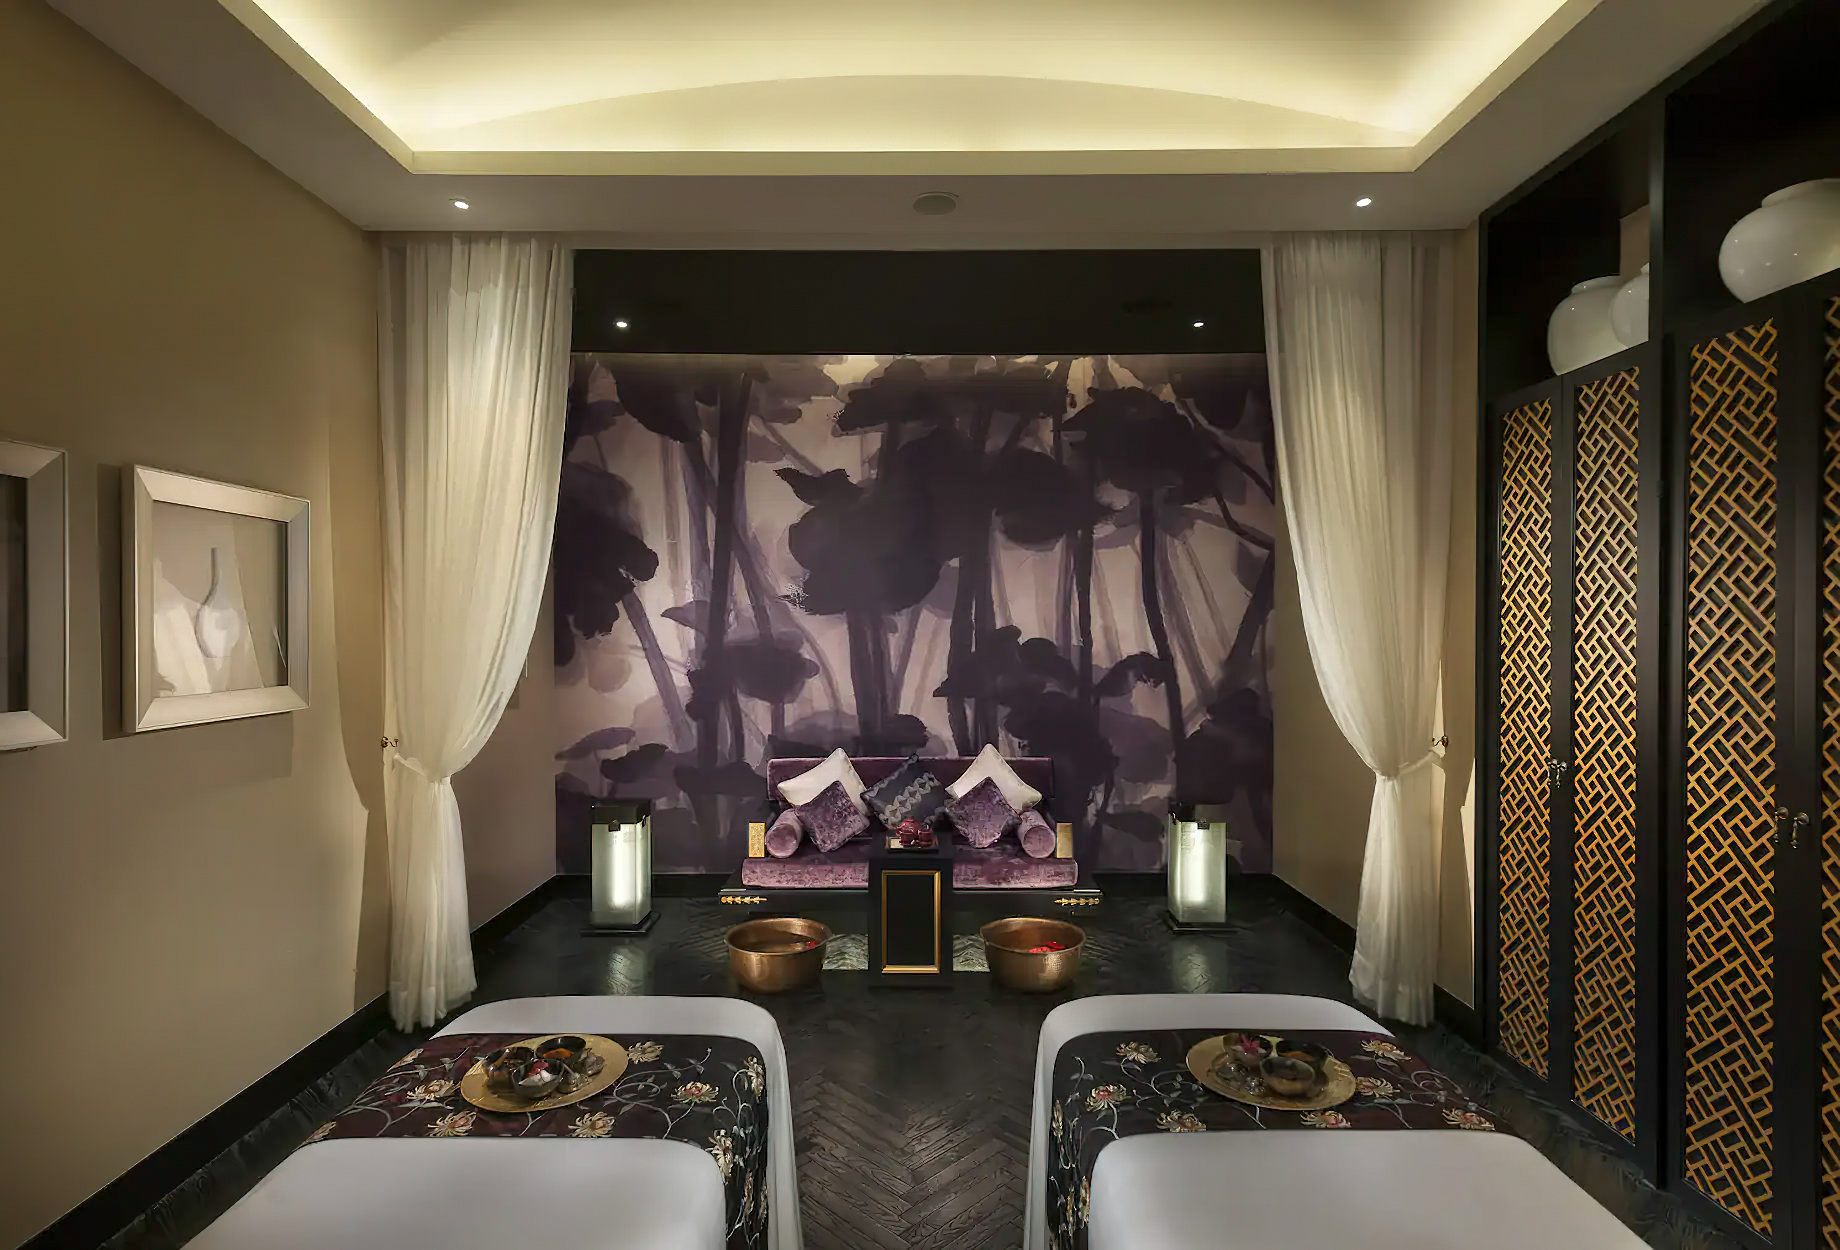 Mandarin Oriental, Guangzhou Hotel – Guangzhou, China – Spa Treatment Room